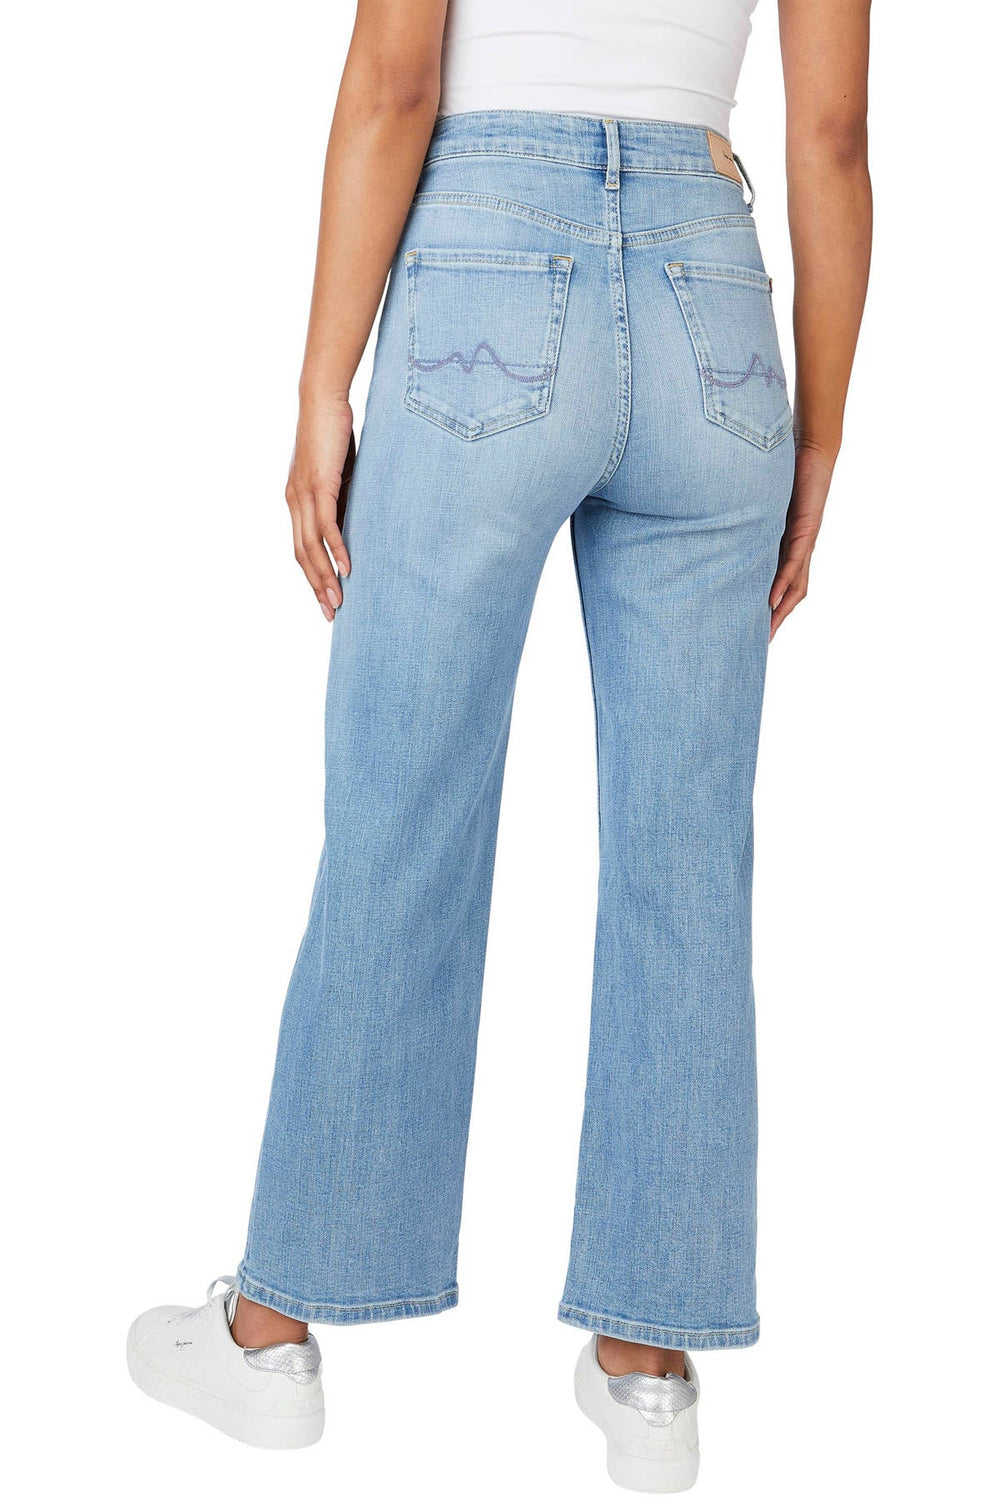 ג'ינס מתרחב Lexa Sky בצבע כחול - Pepe Jeans